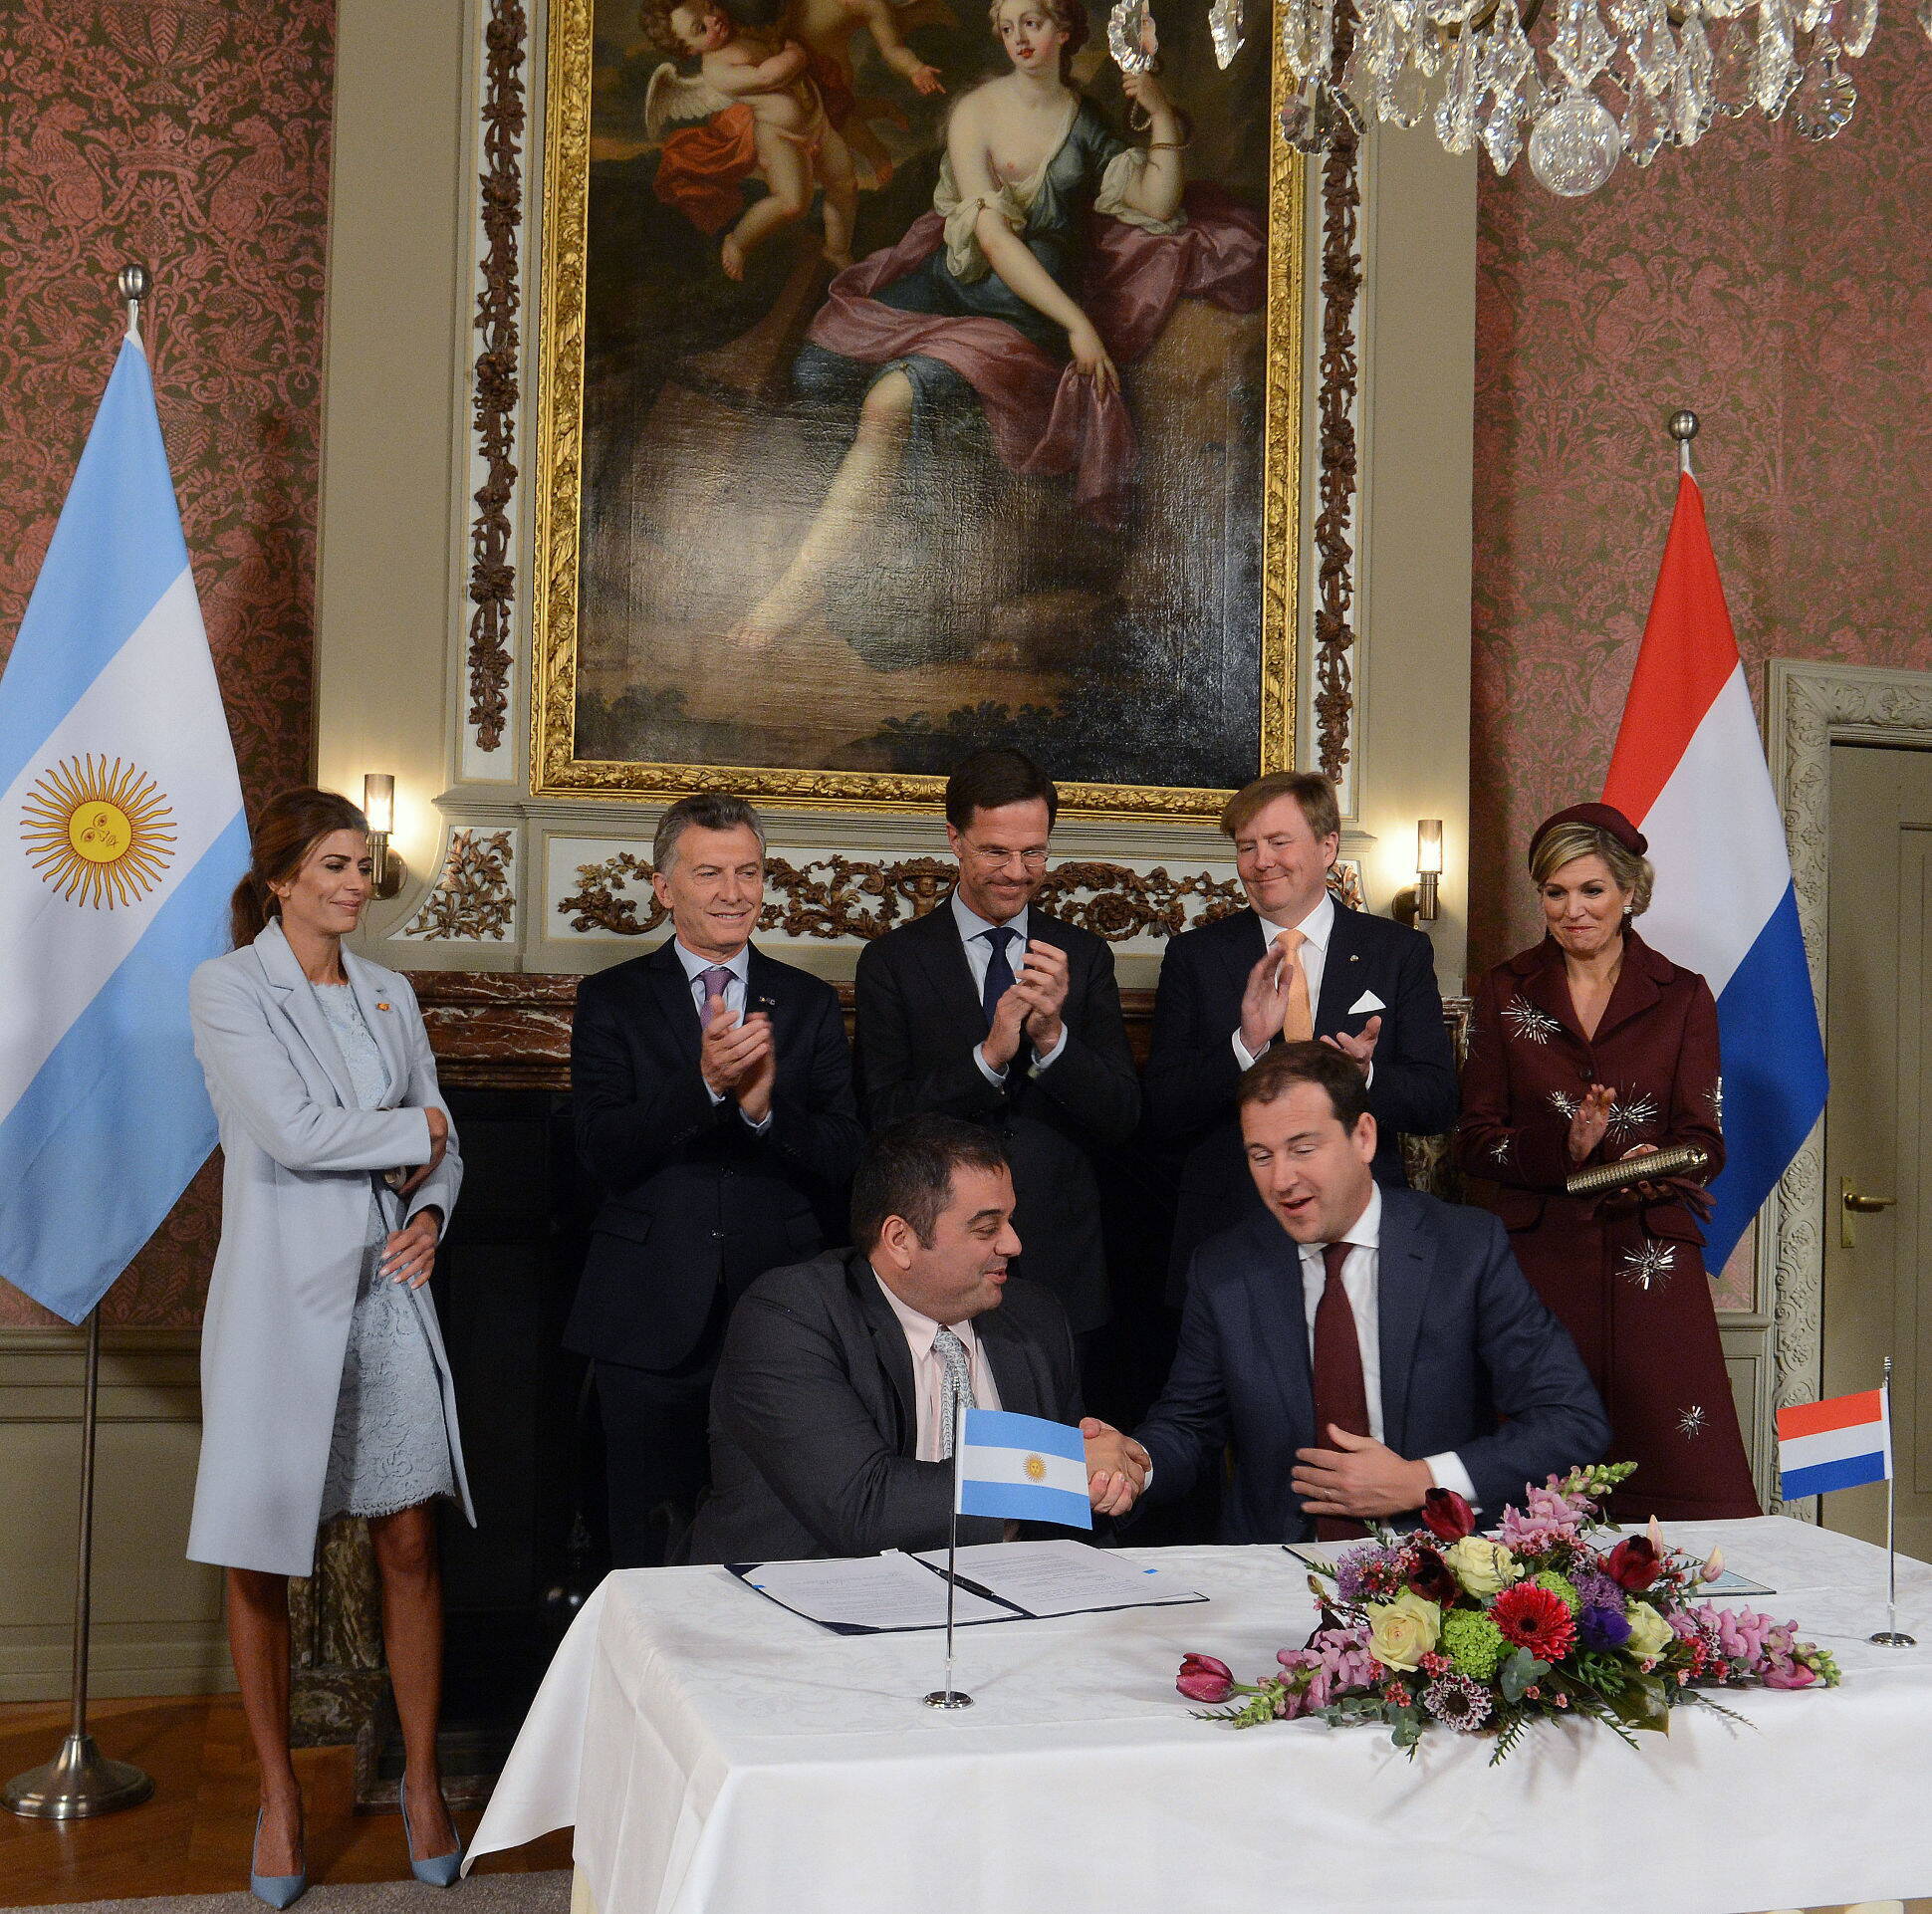 La Argentina y los Países Bajos firmaron un acuerdo sobre Empleo y Diálogo Social